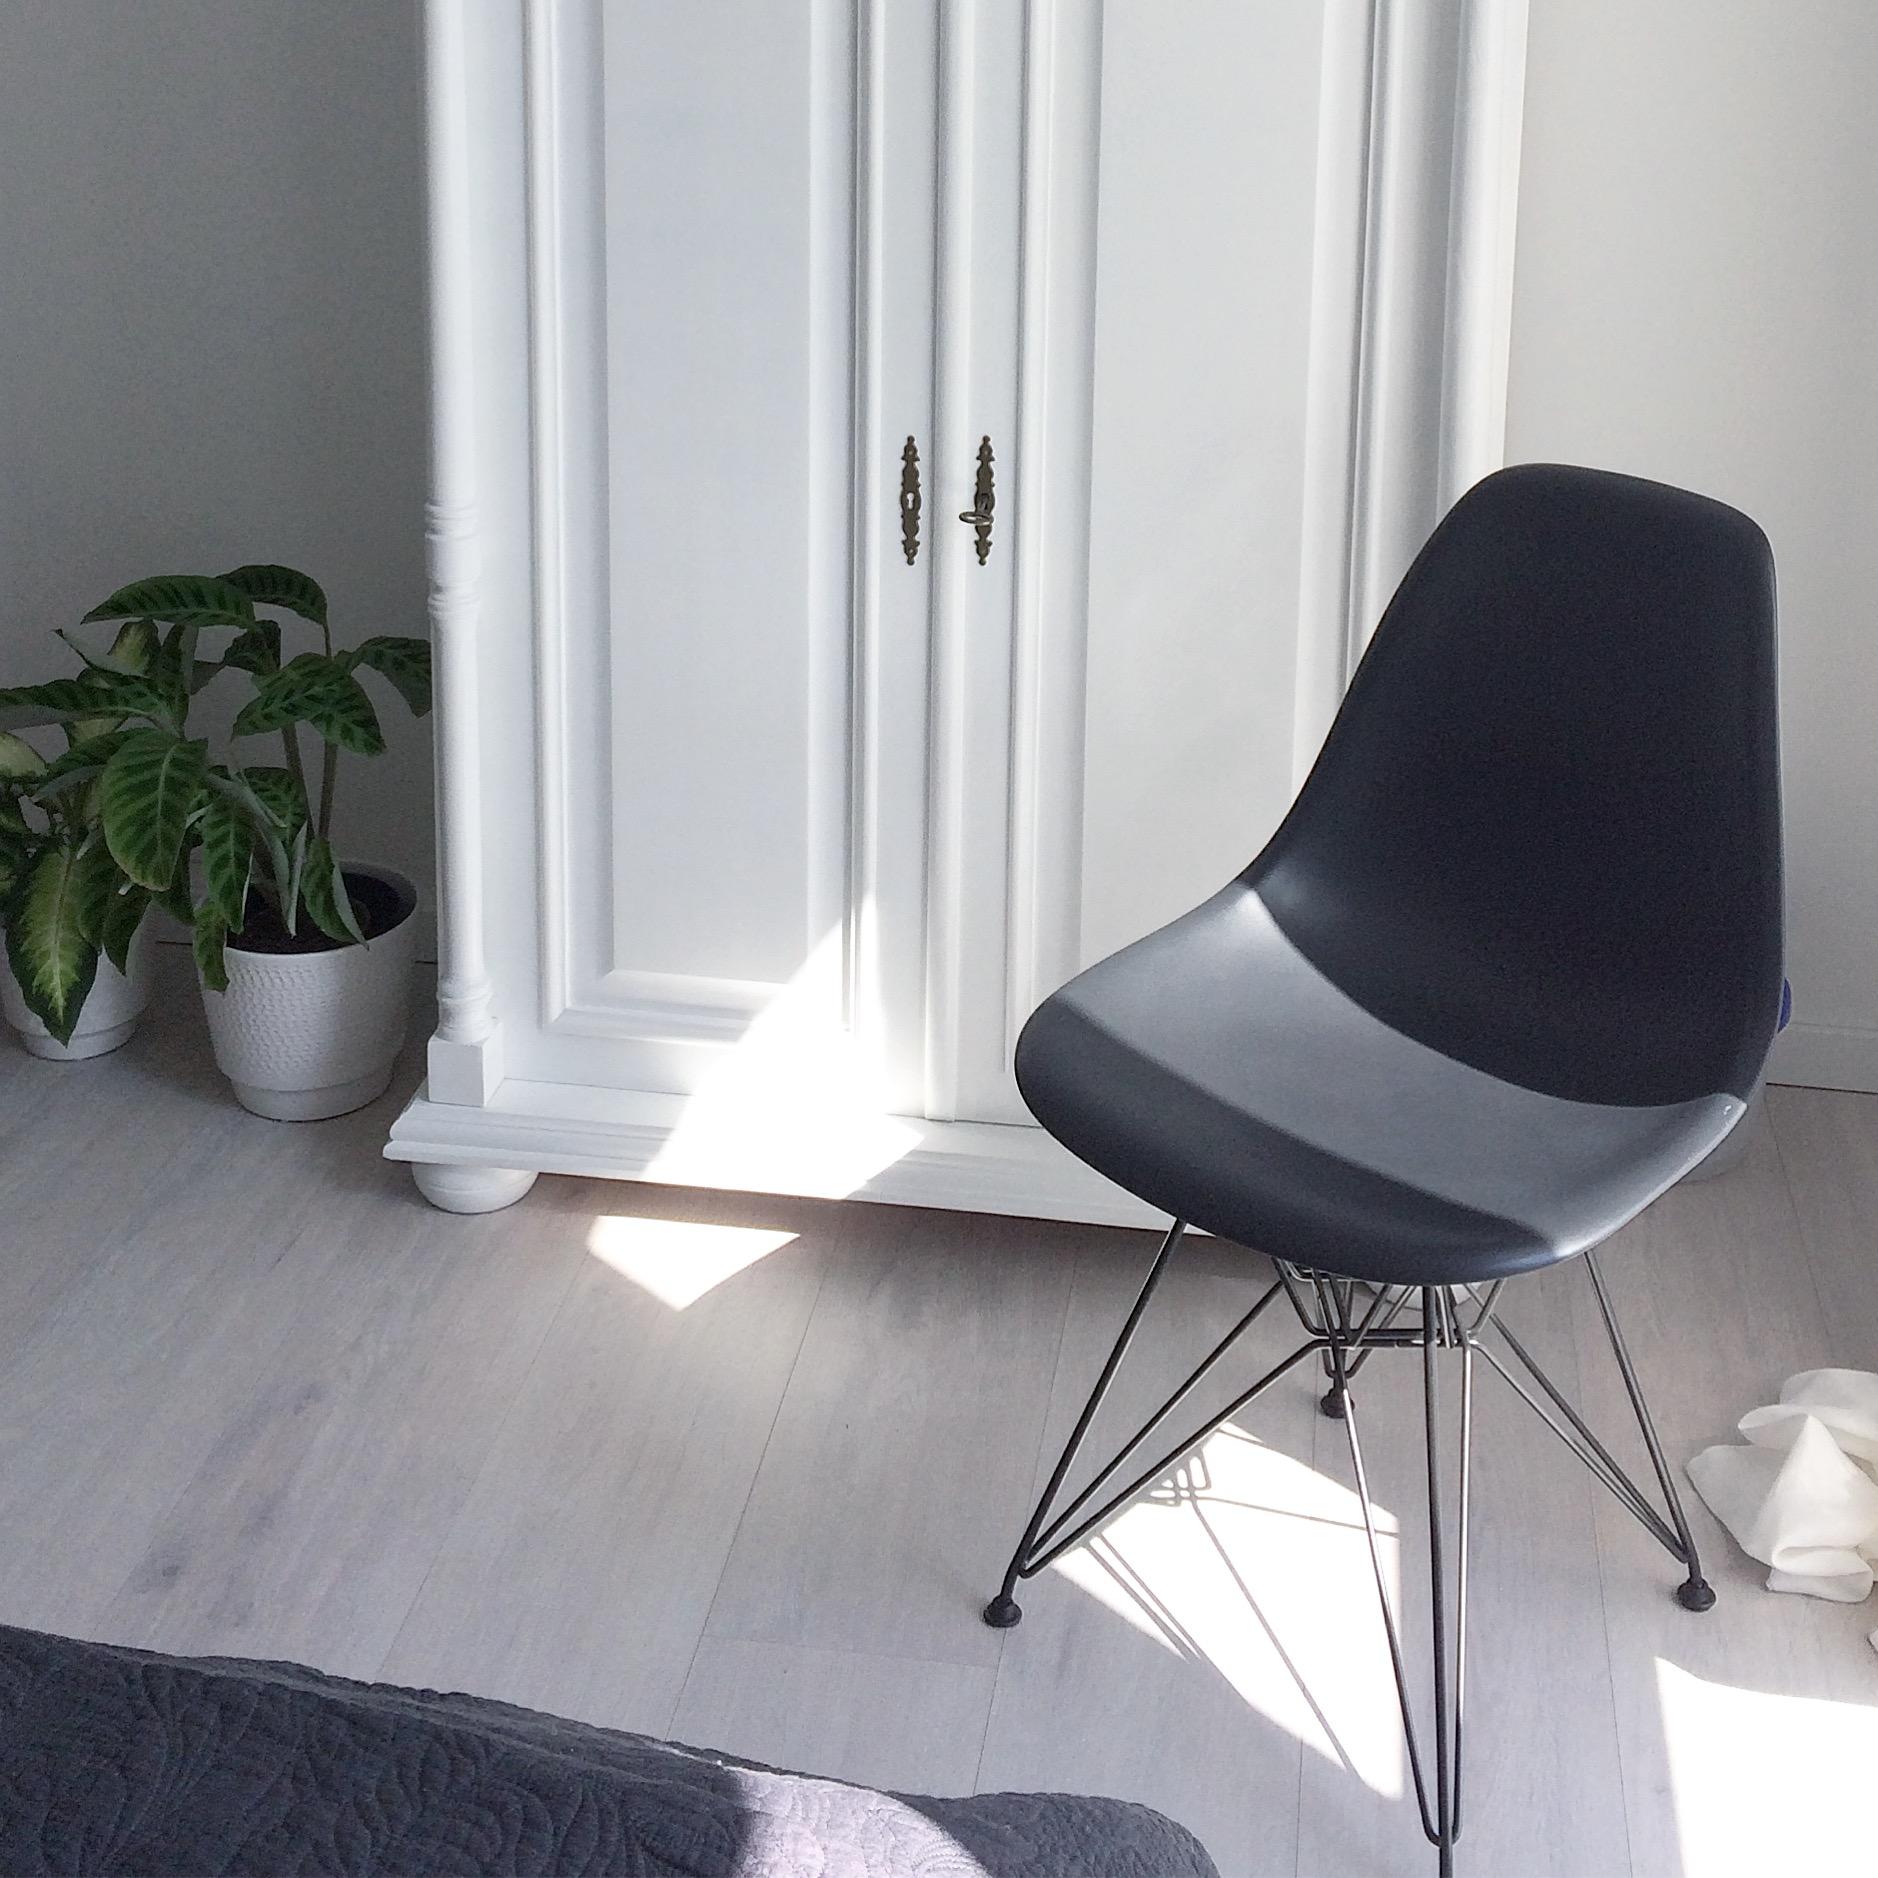 Einblick ins Schlafzimmer #interior #interiors #interiordesign #vitra #eames #whiteliving #weißeswohnen #minimalism